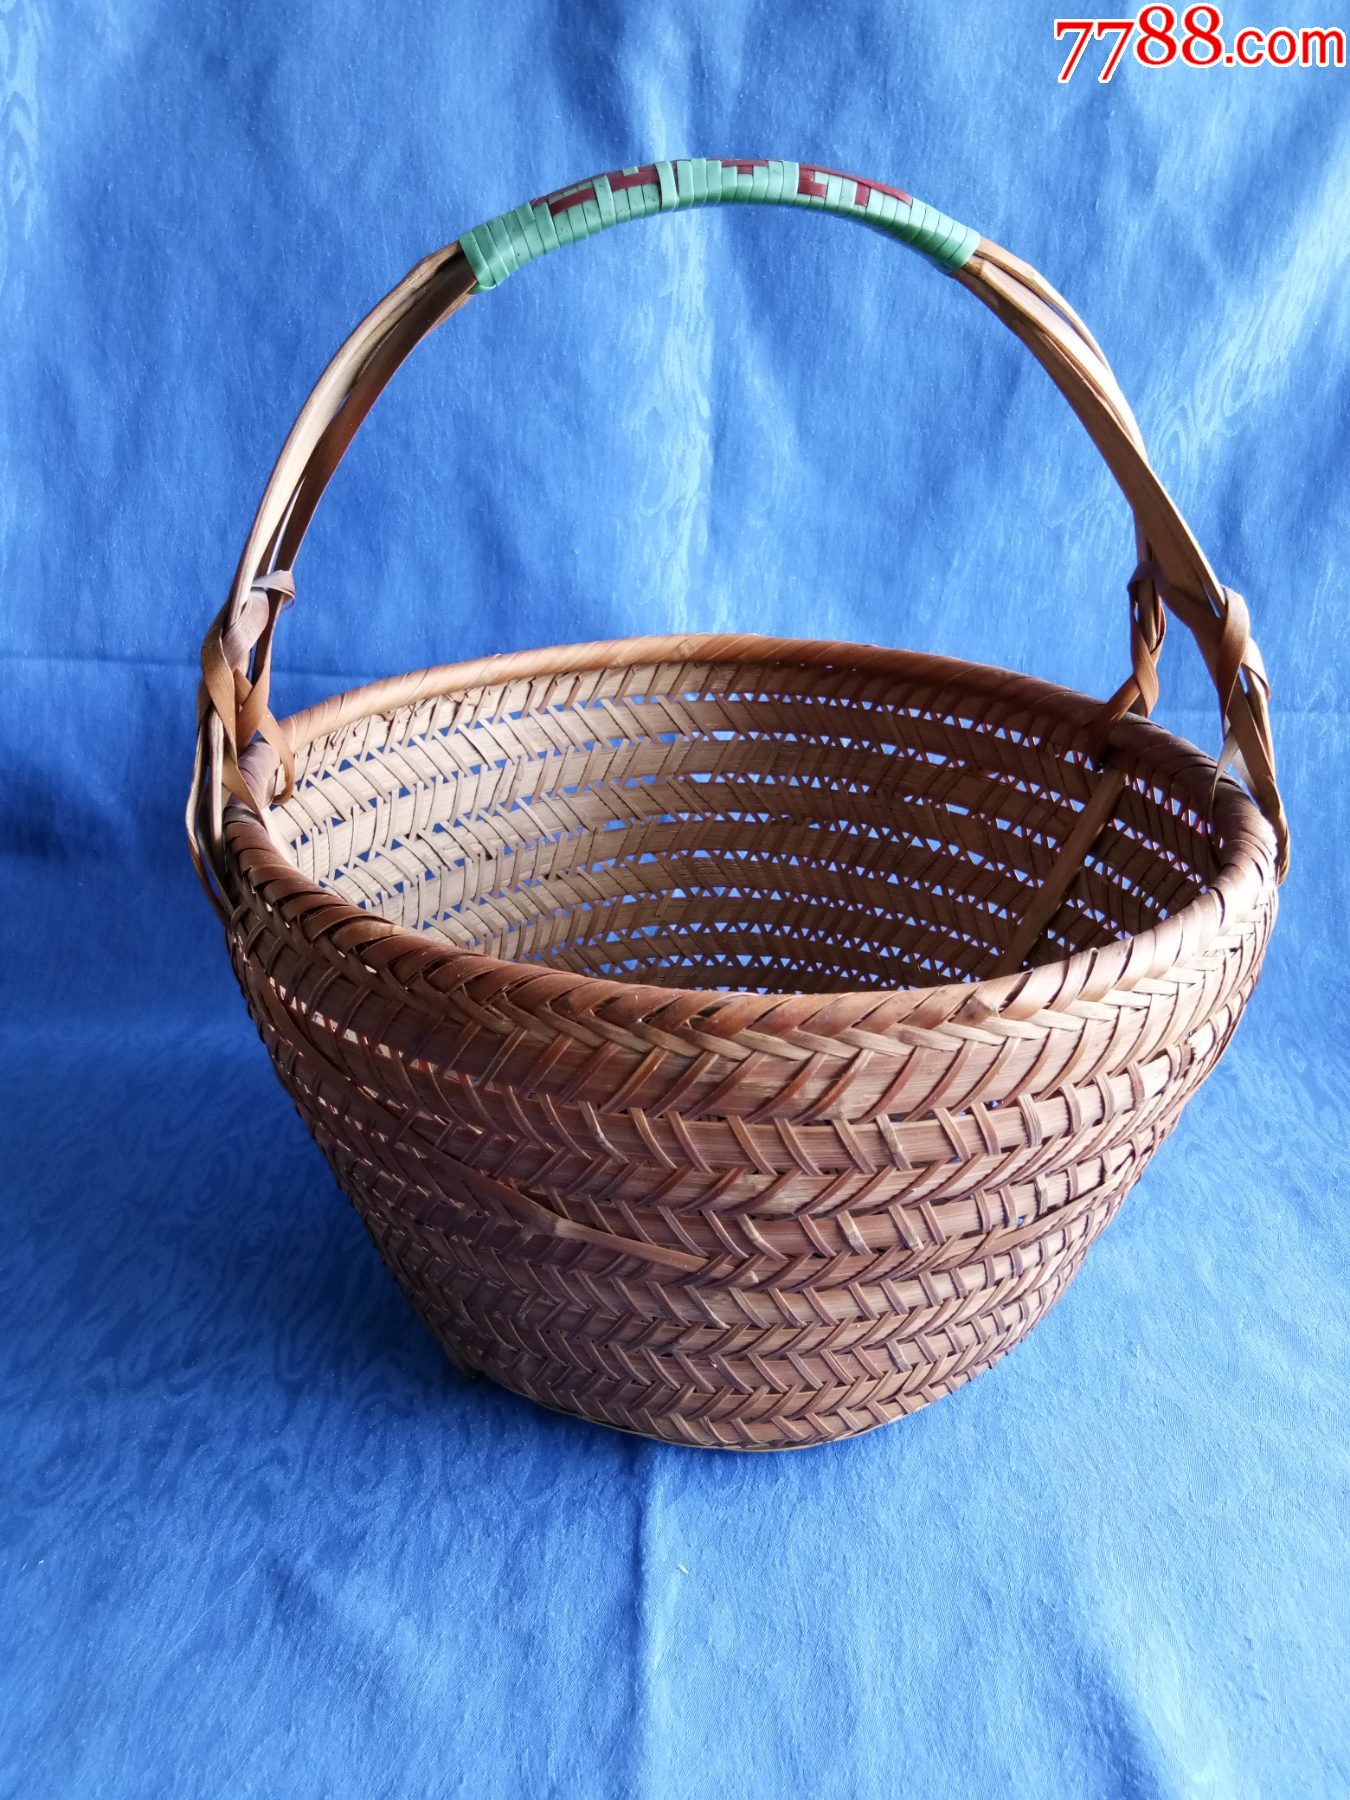 六十年代手工编织竹篮子民俗老物件